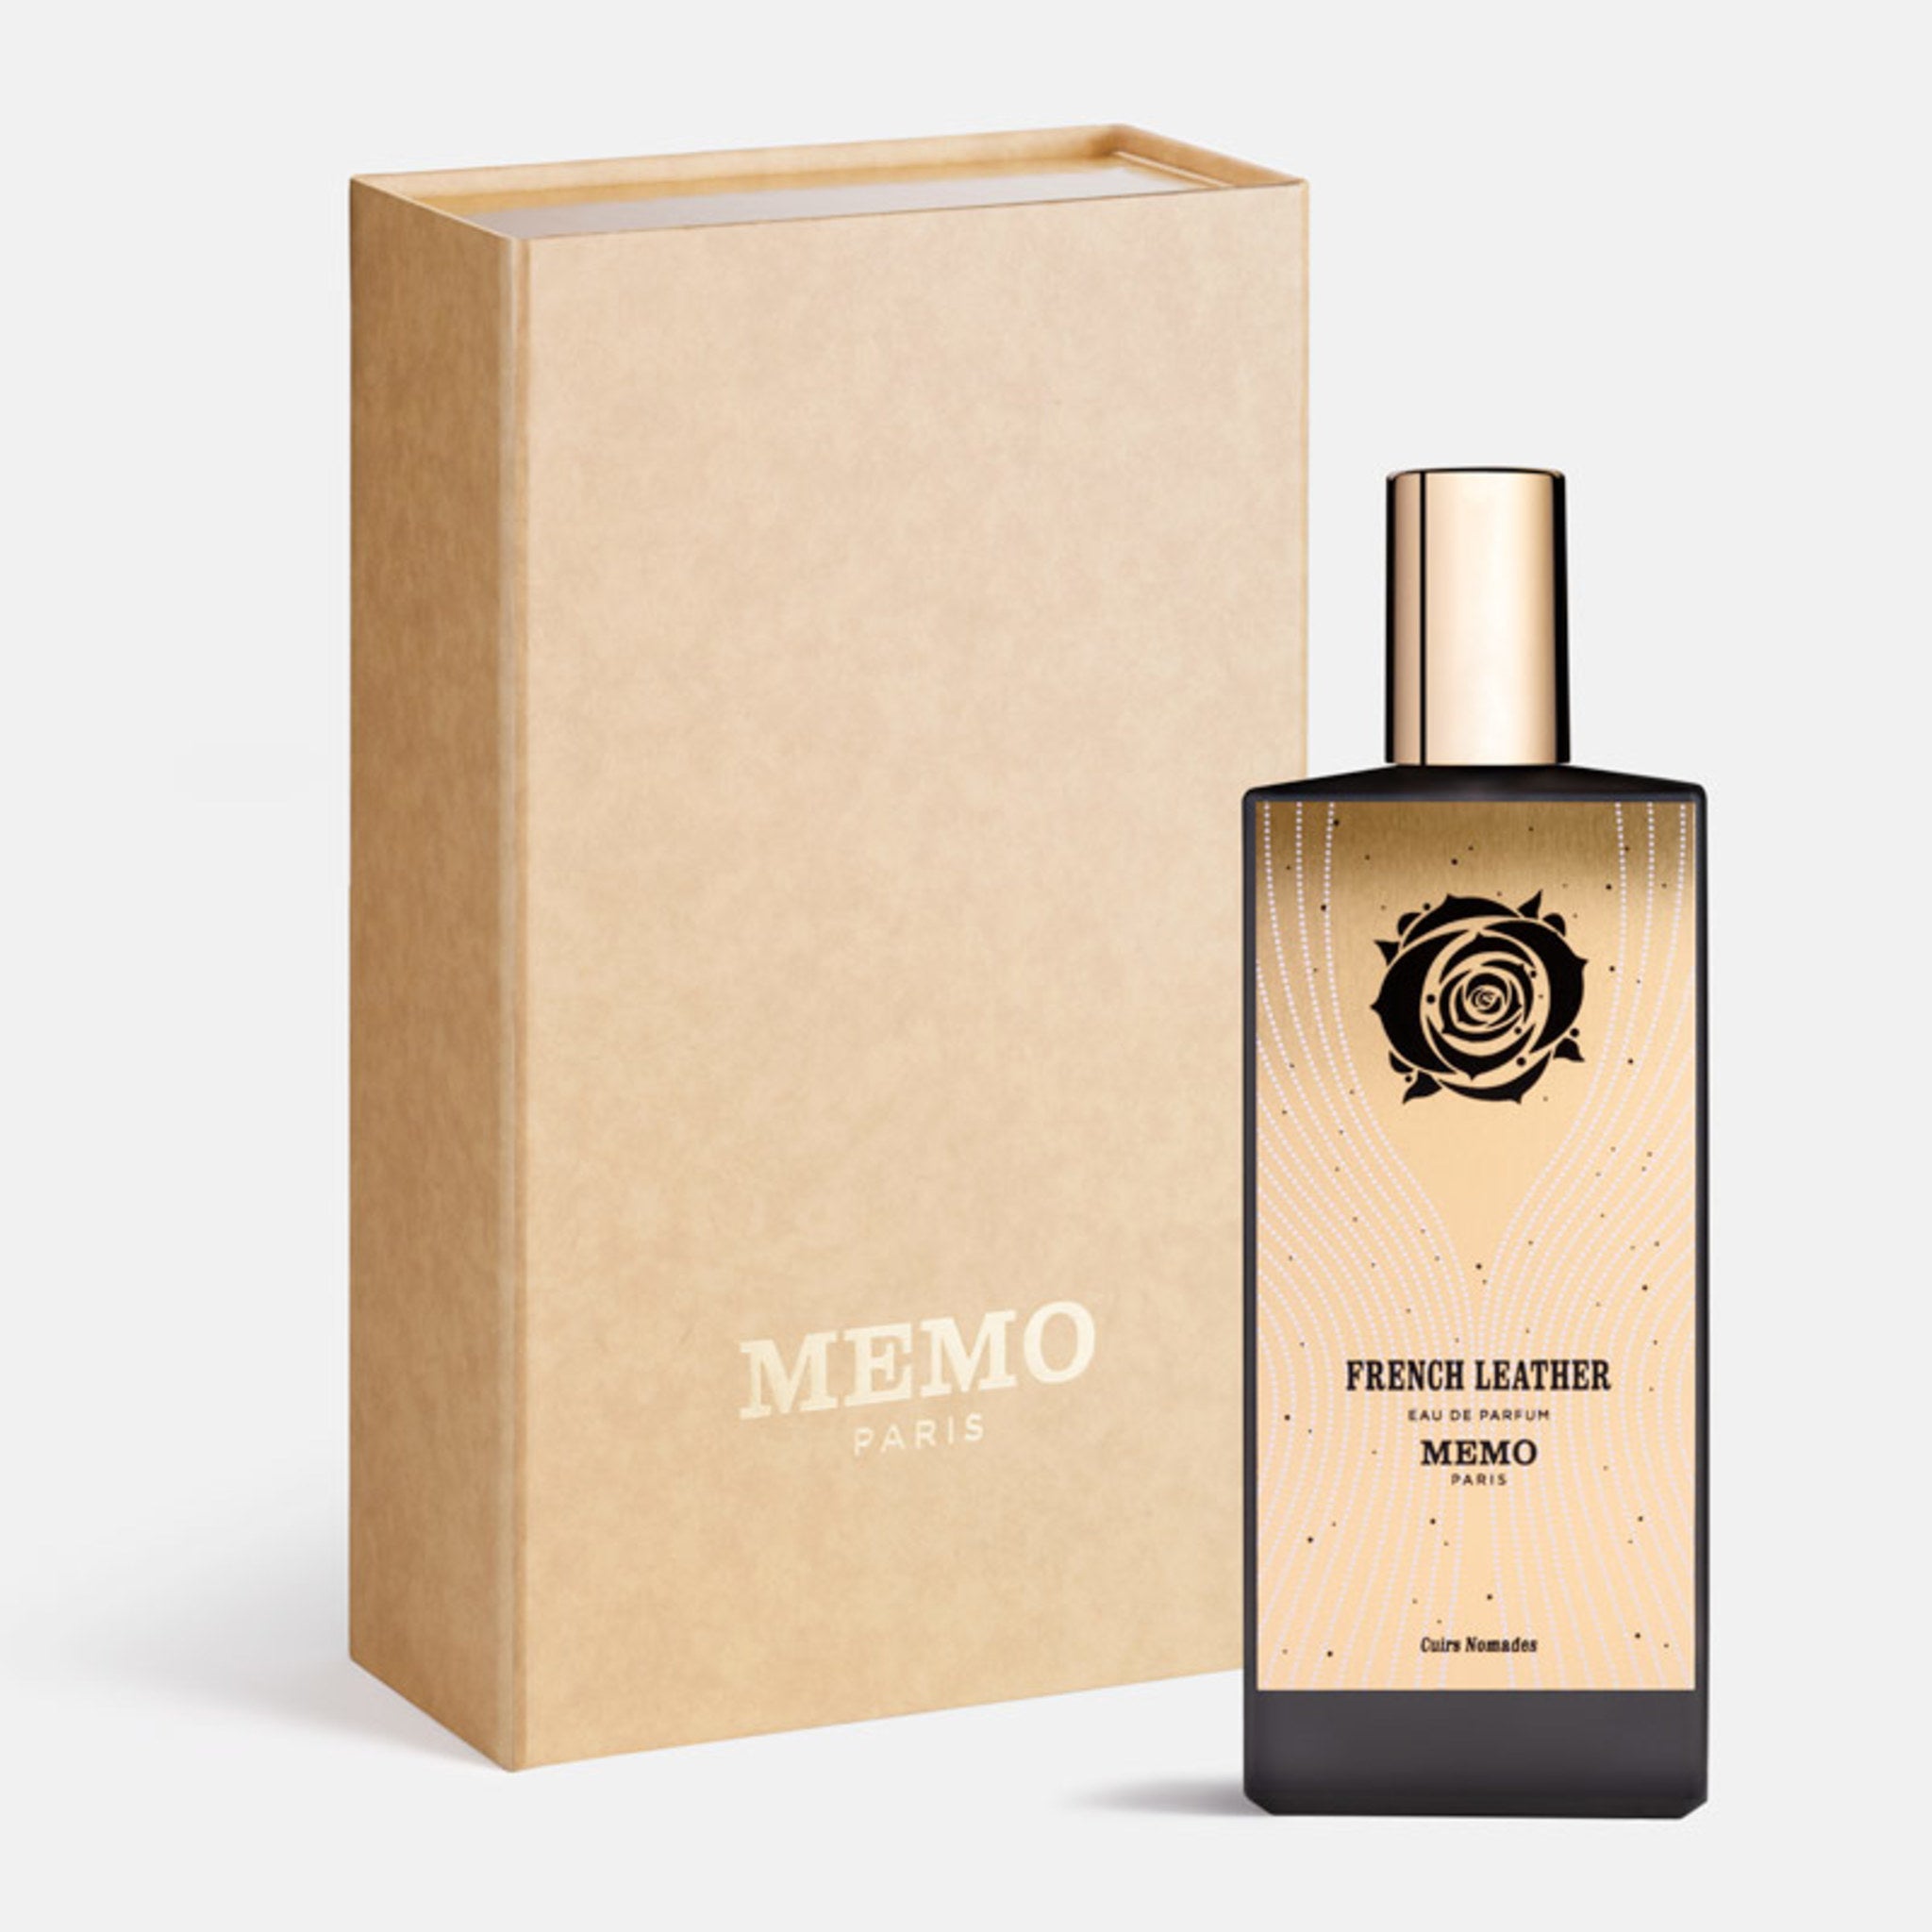 Limited edition Memo Paris French Leather Eau de Parfum (Limited Edition) Size variant: 2.54 fl oz | 75 ml main image.